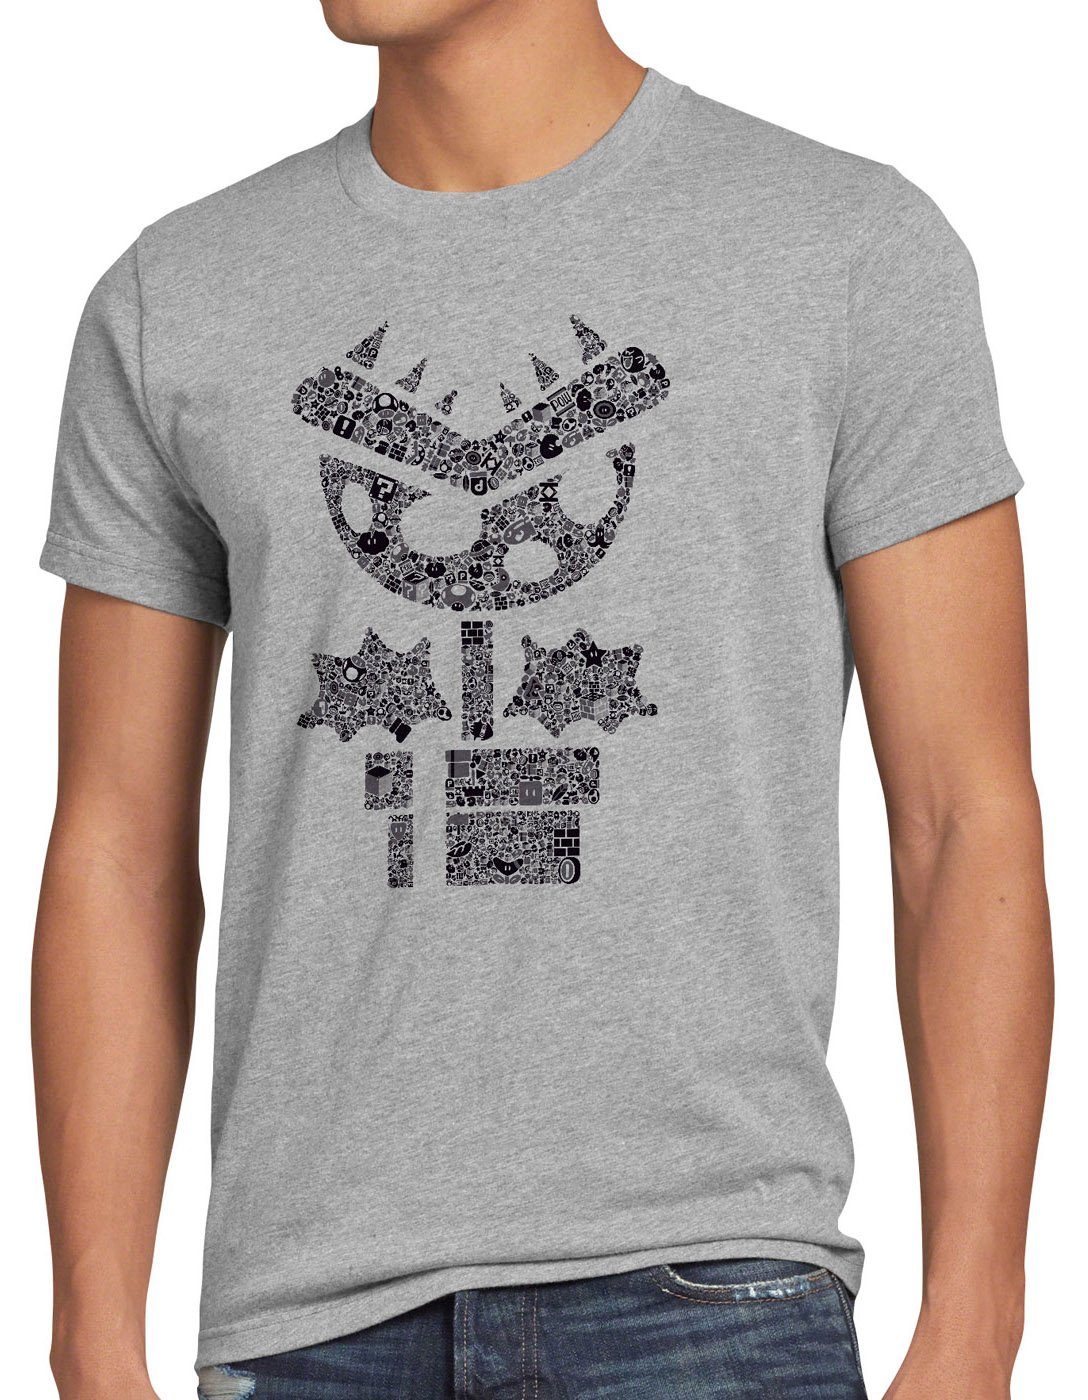 style3 Print-Shirt Herren T-Shirt Super Piranha mario videospiel gamer world game boy nes snes wii grau meliert | T-Shirts